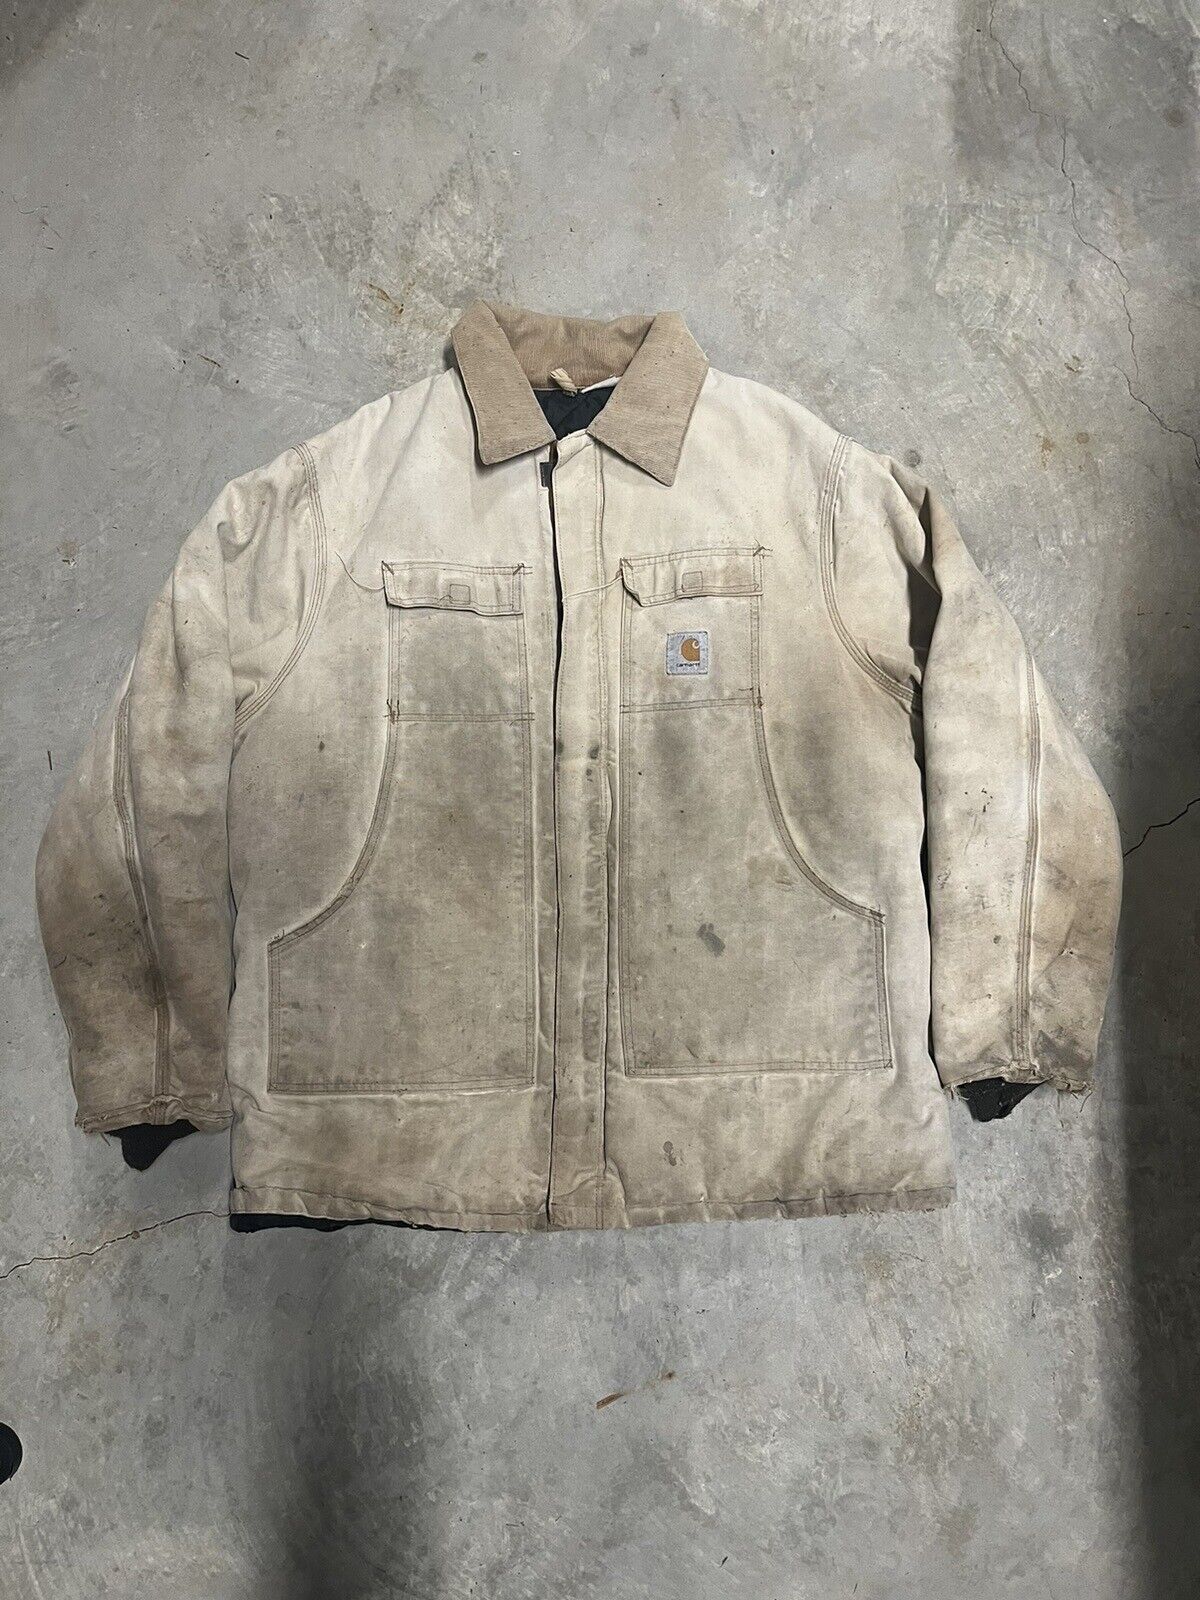 Carhartt Jacket Men's xl C26 Sandstone Duck quilt lined coat distressed ...